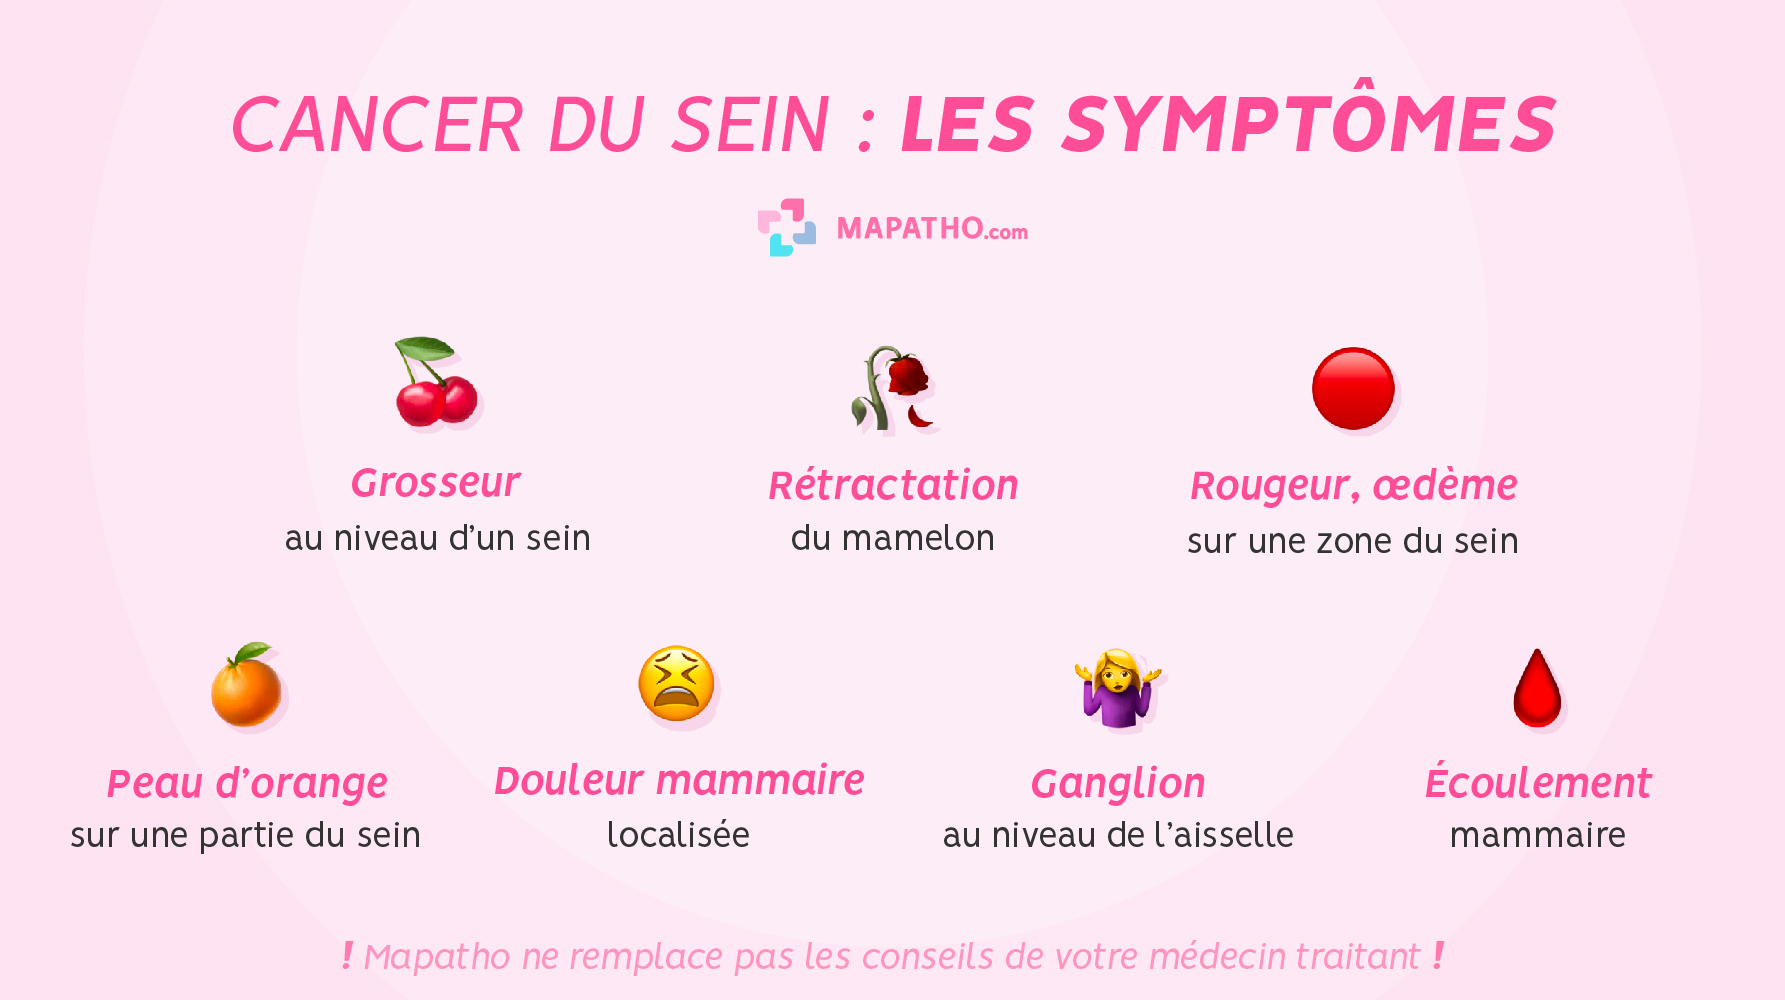 Les symptômes du cancer du sein